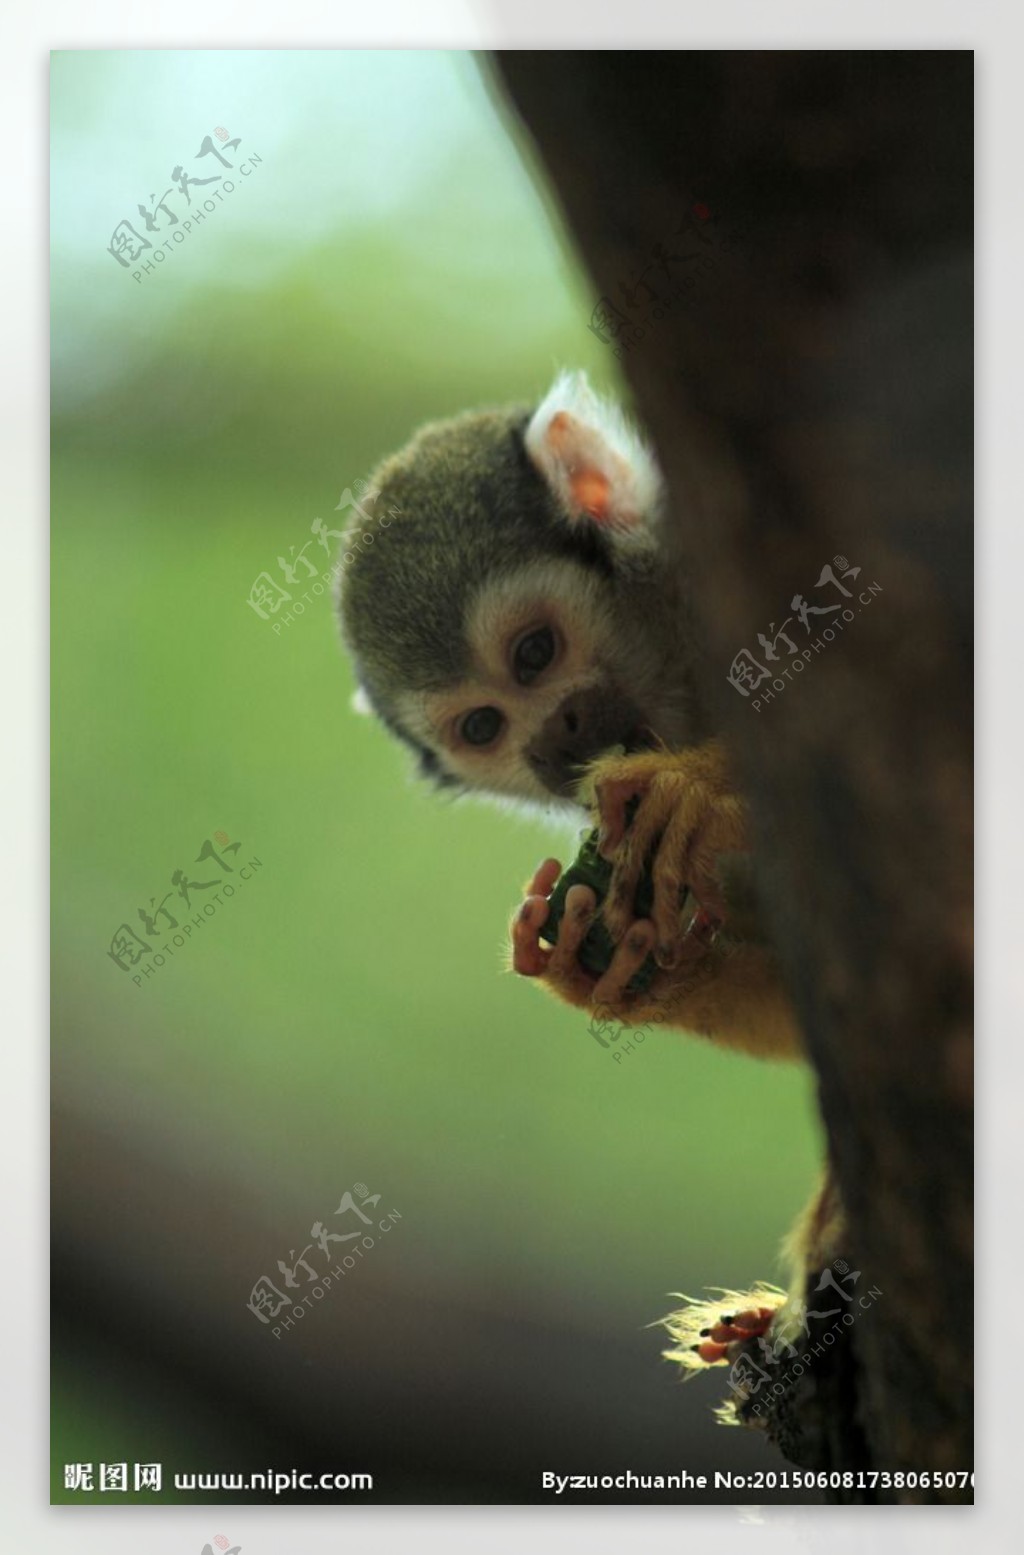 吃黄瓜的小猴子图片